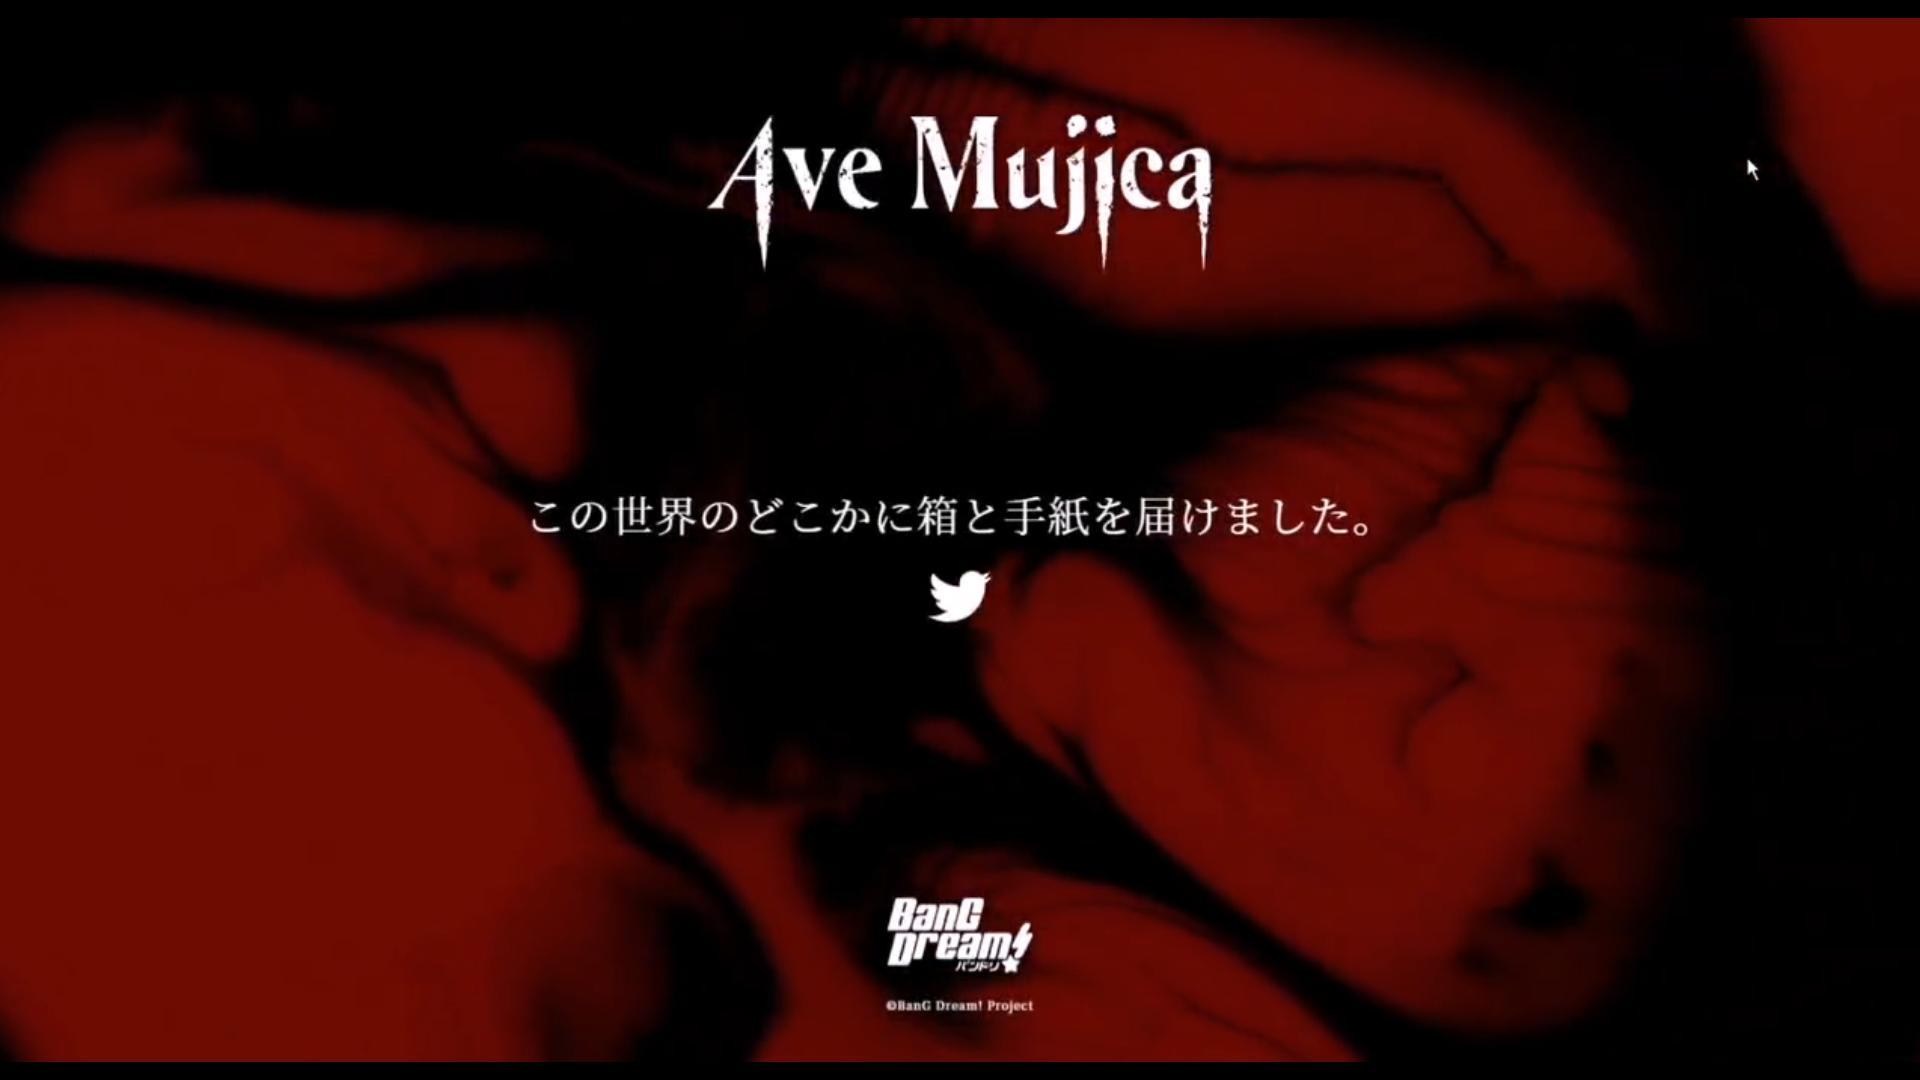 三角初華 Misumi Uika (Bang dream! Ave Mujica) - v1.0